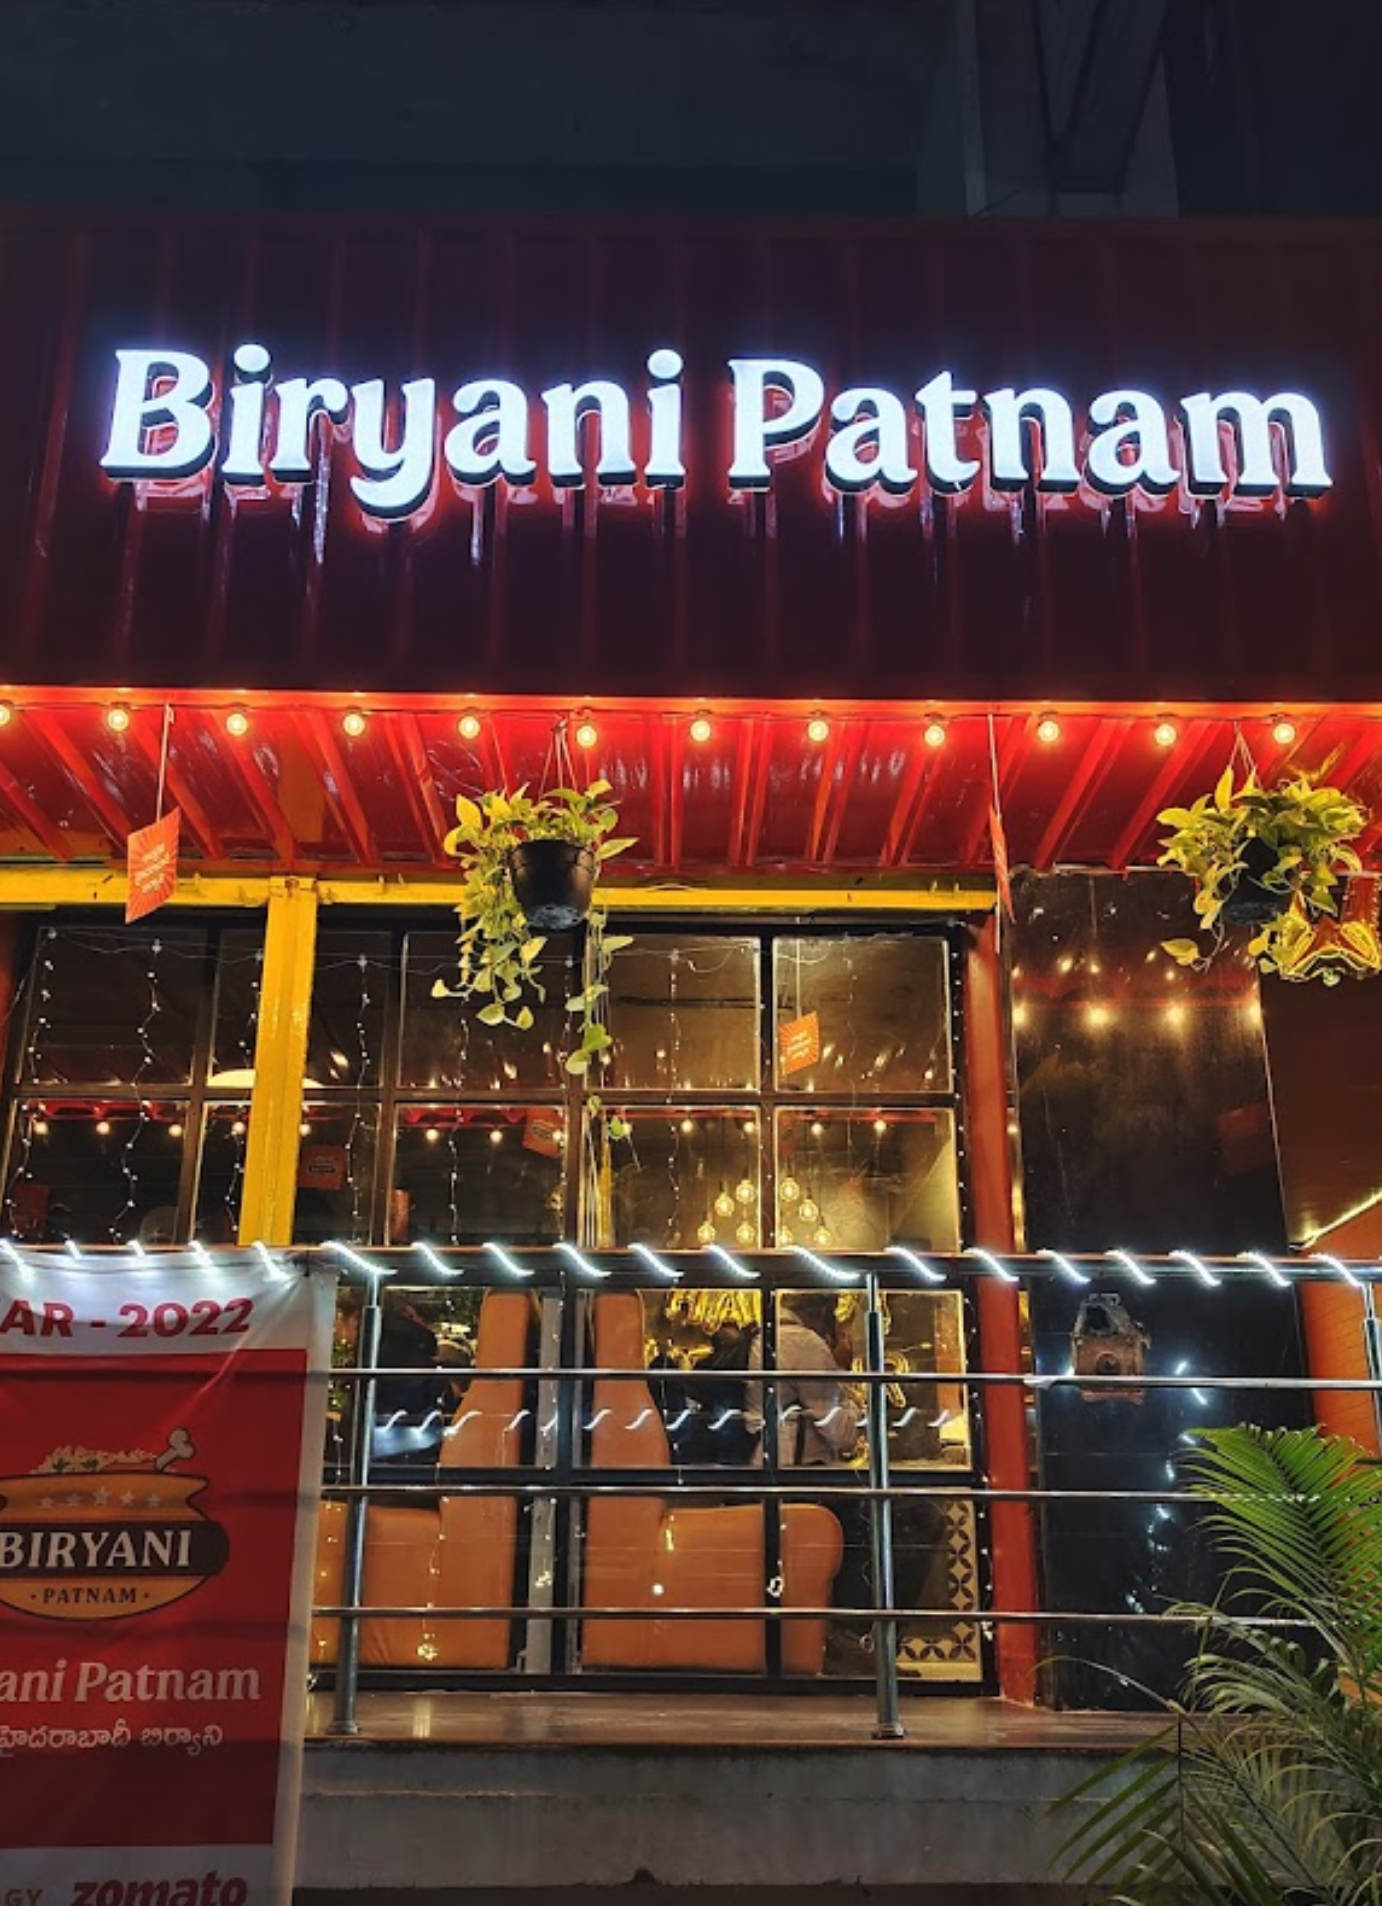 Biryani Patnam restaurant image